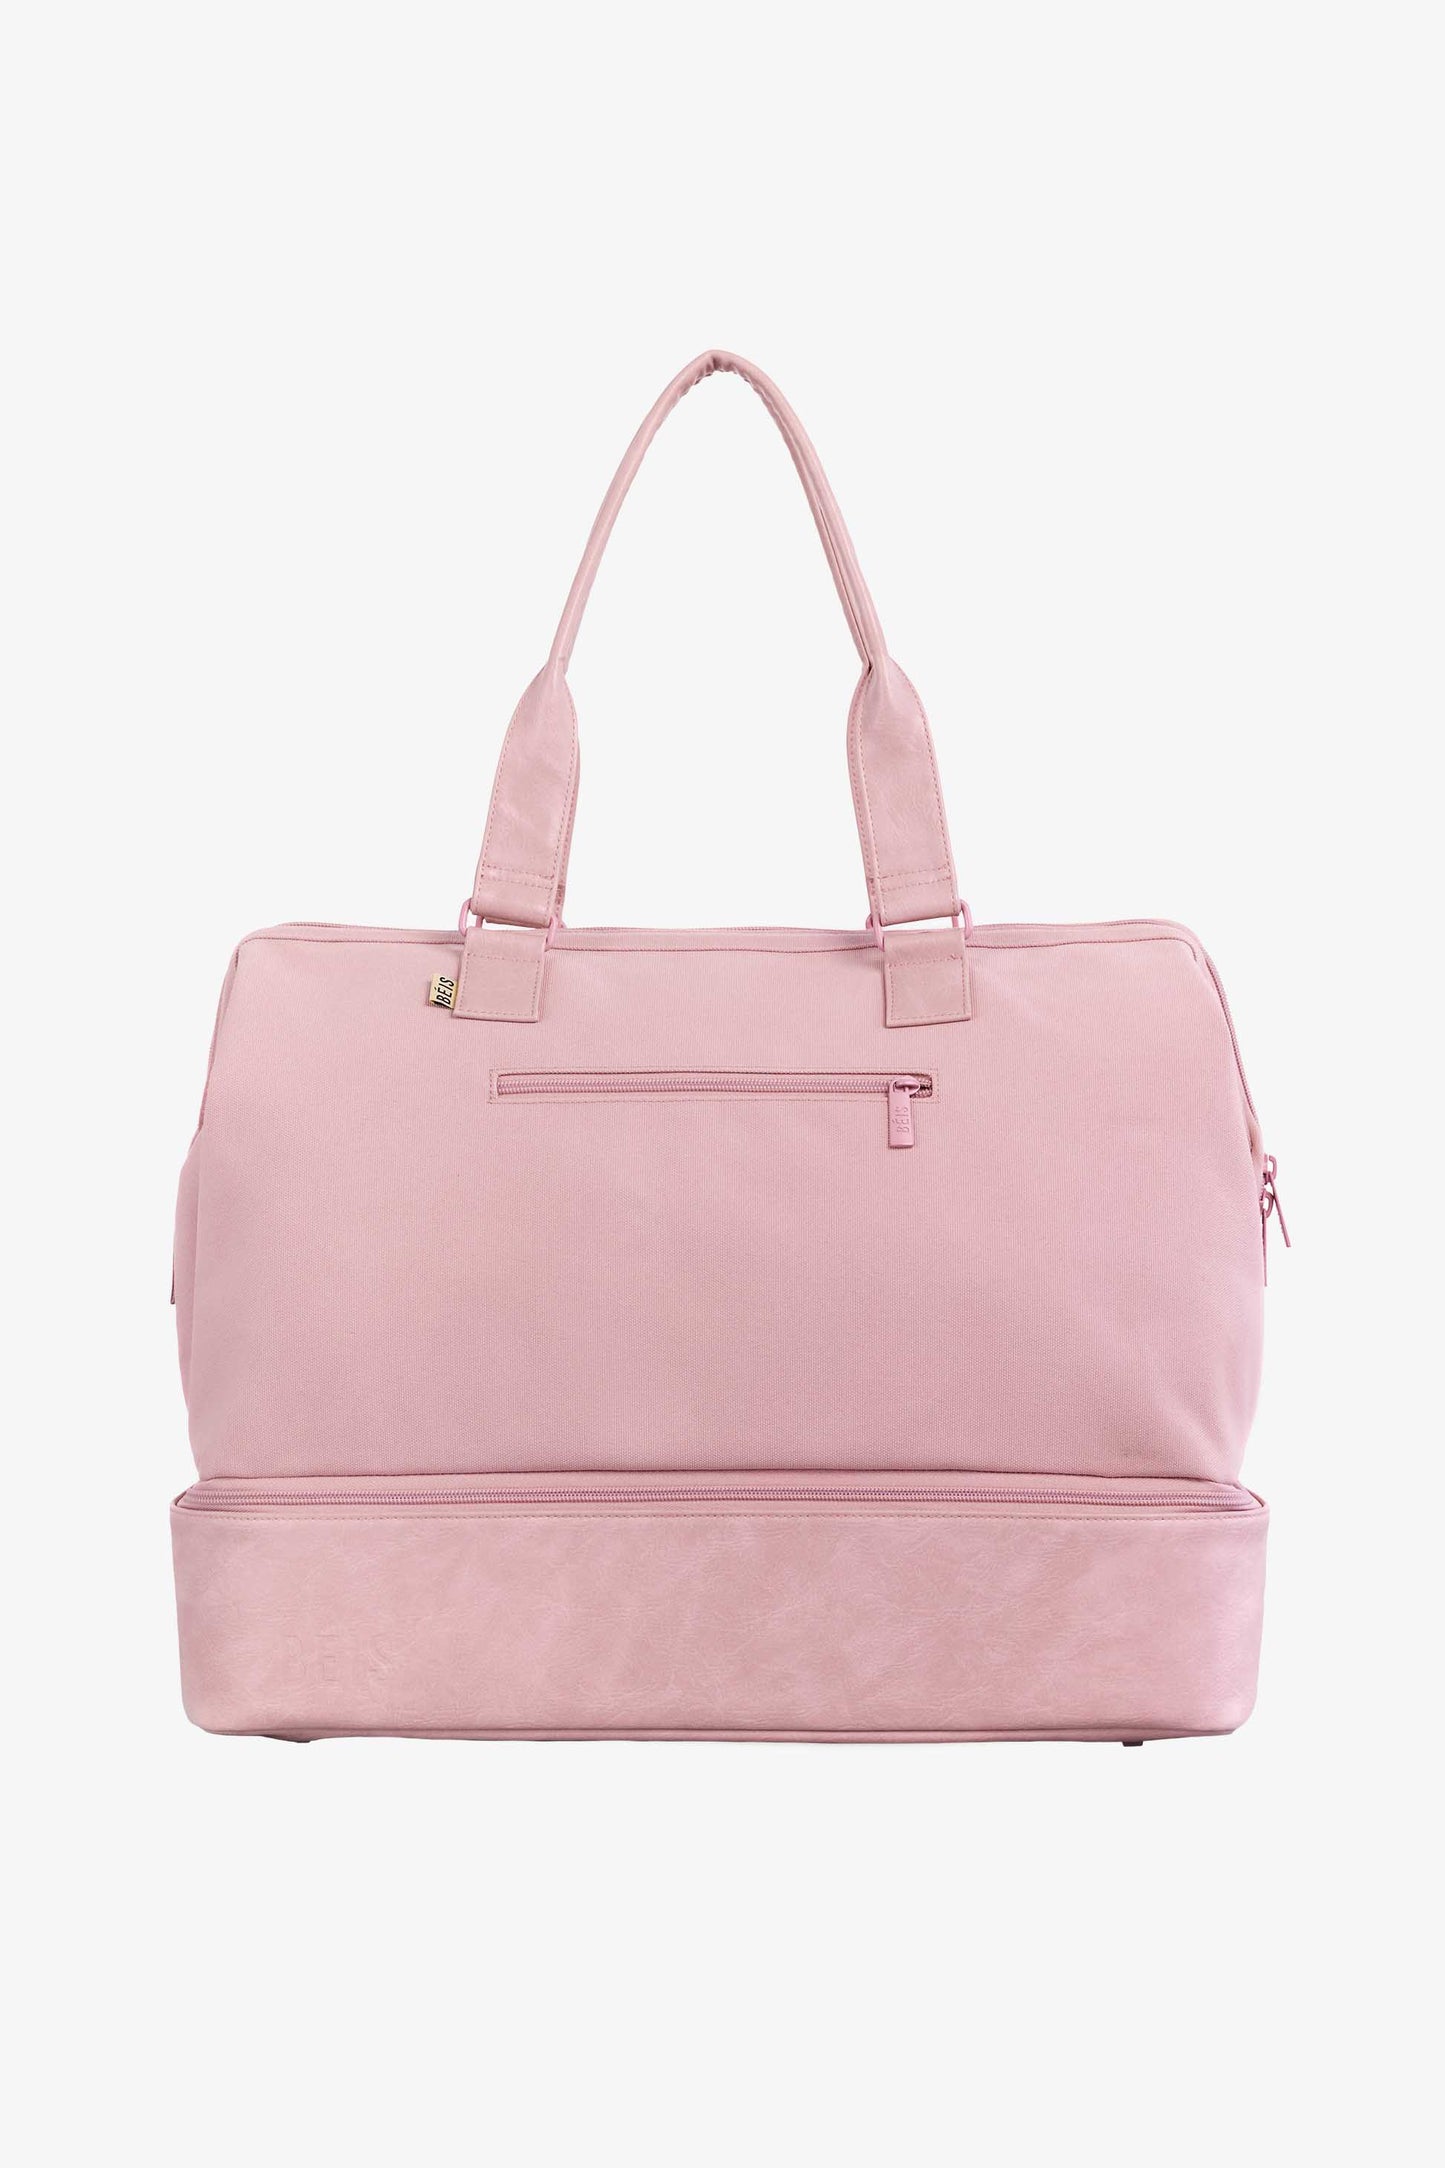 BÉIS 'The Weekender' in Atlas Pink - Pink Weekend Bag & Overnight Bag